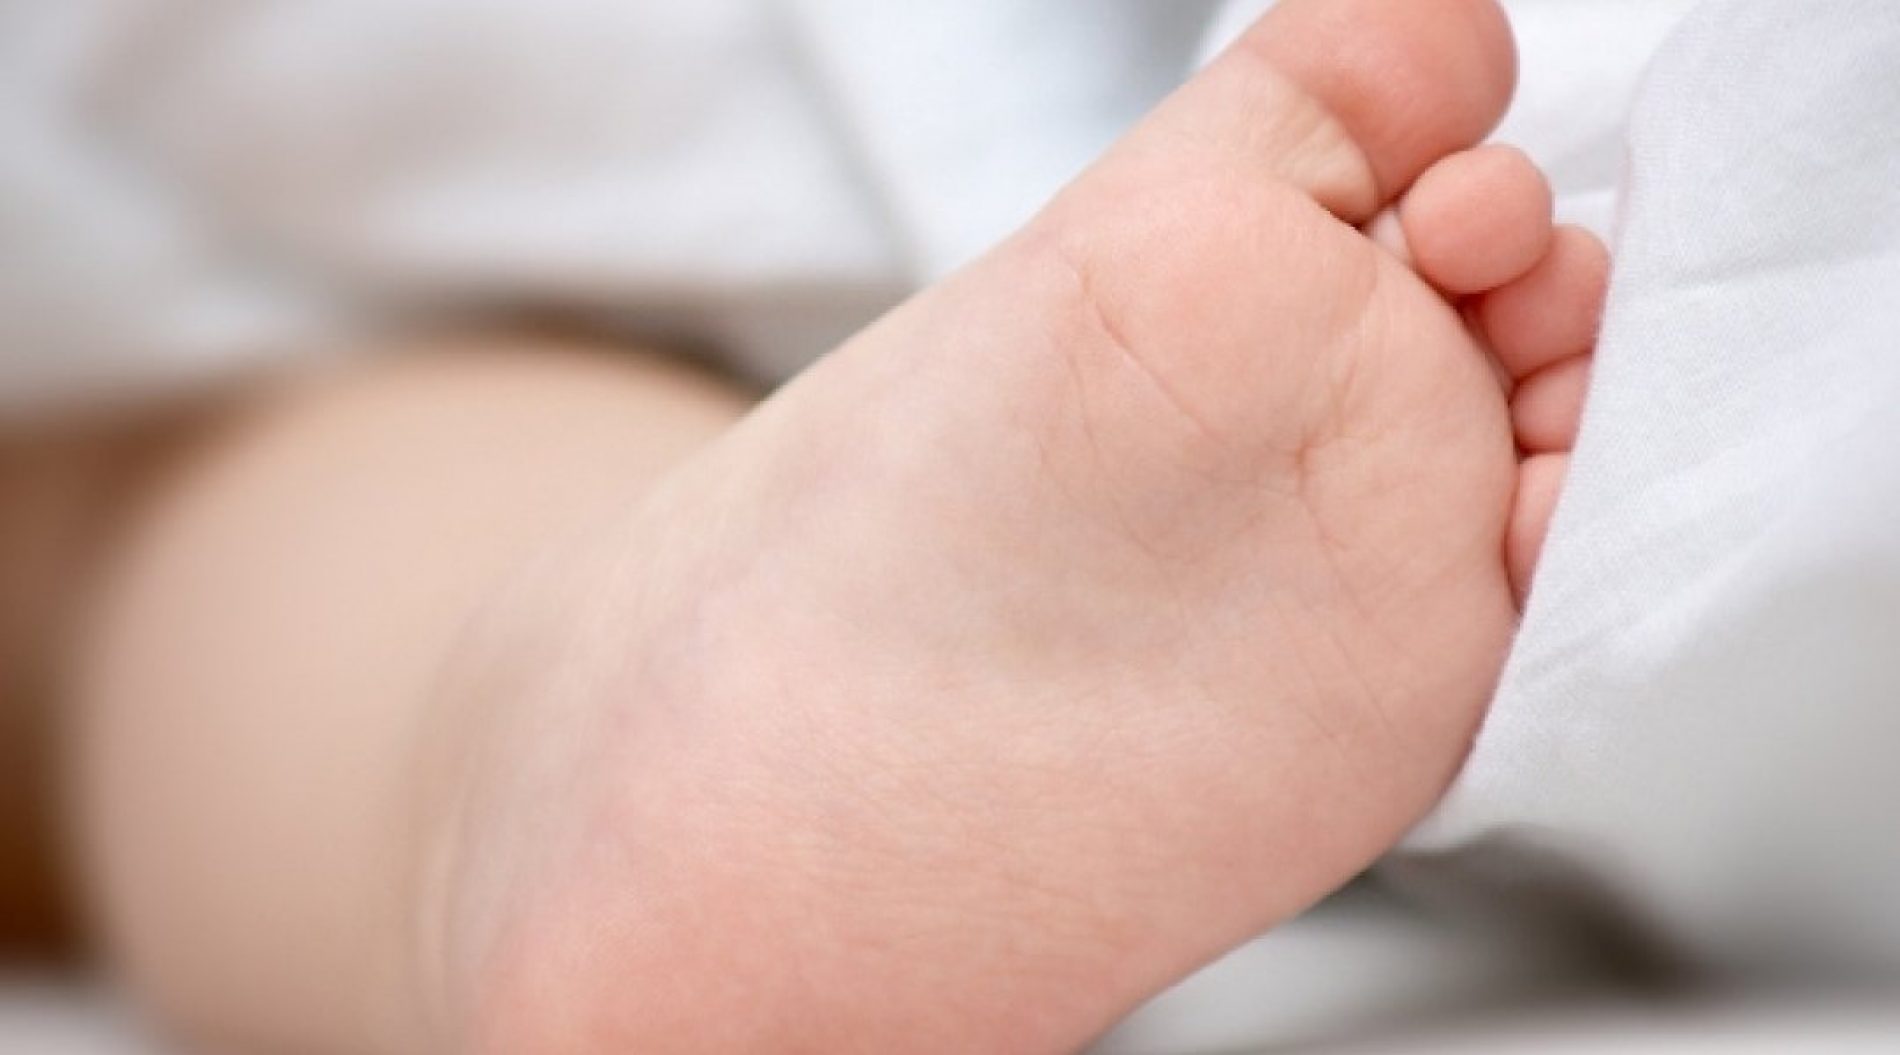 REGIÃO: Pais são suspeitos de maus tratos a bebê